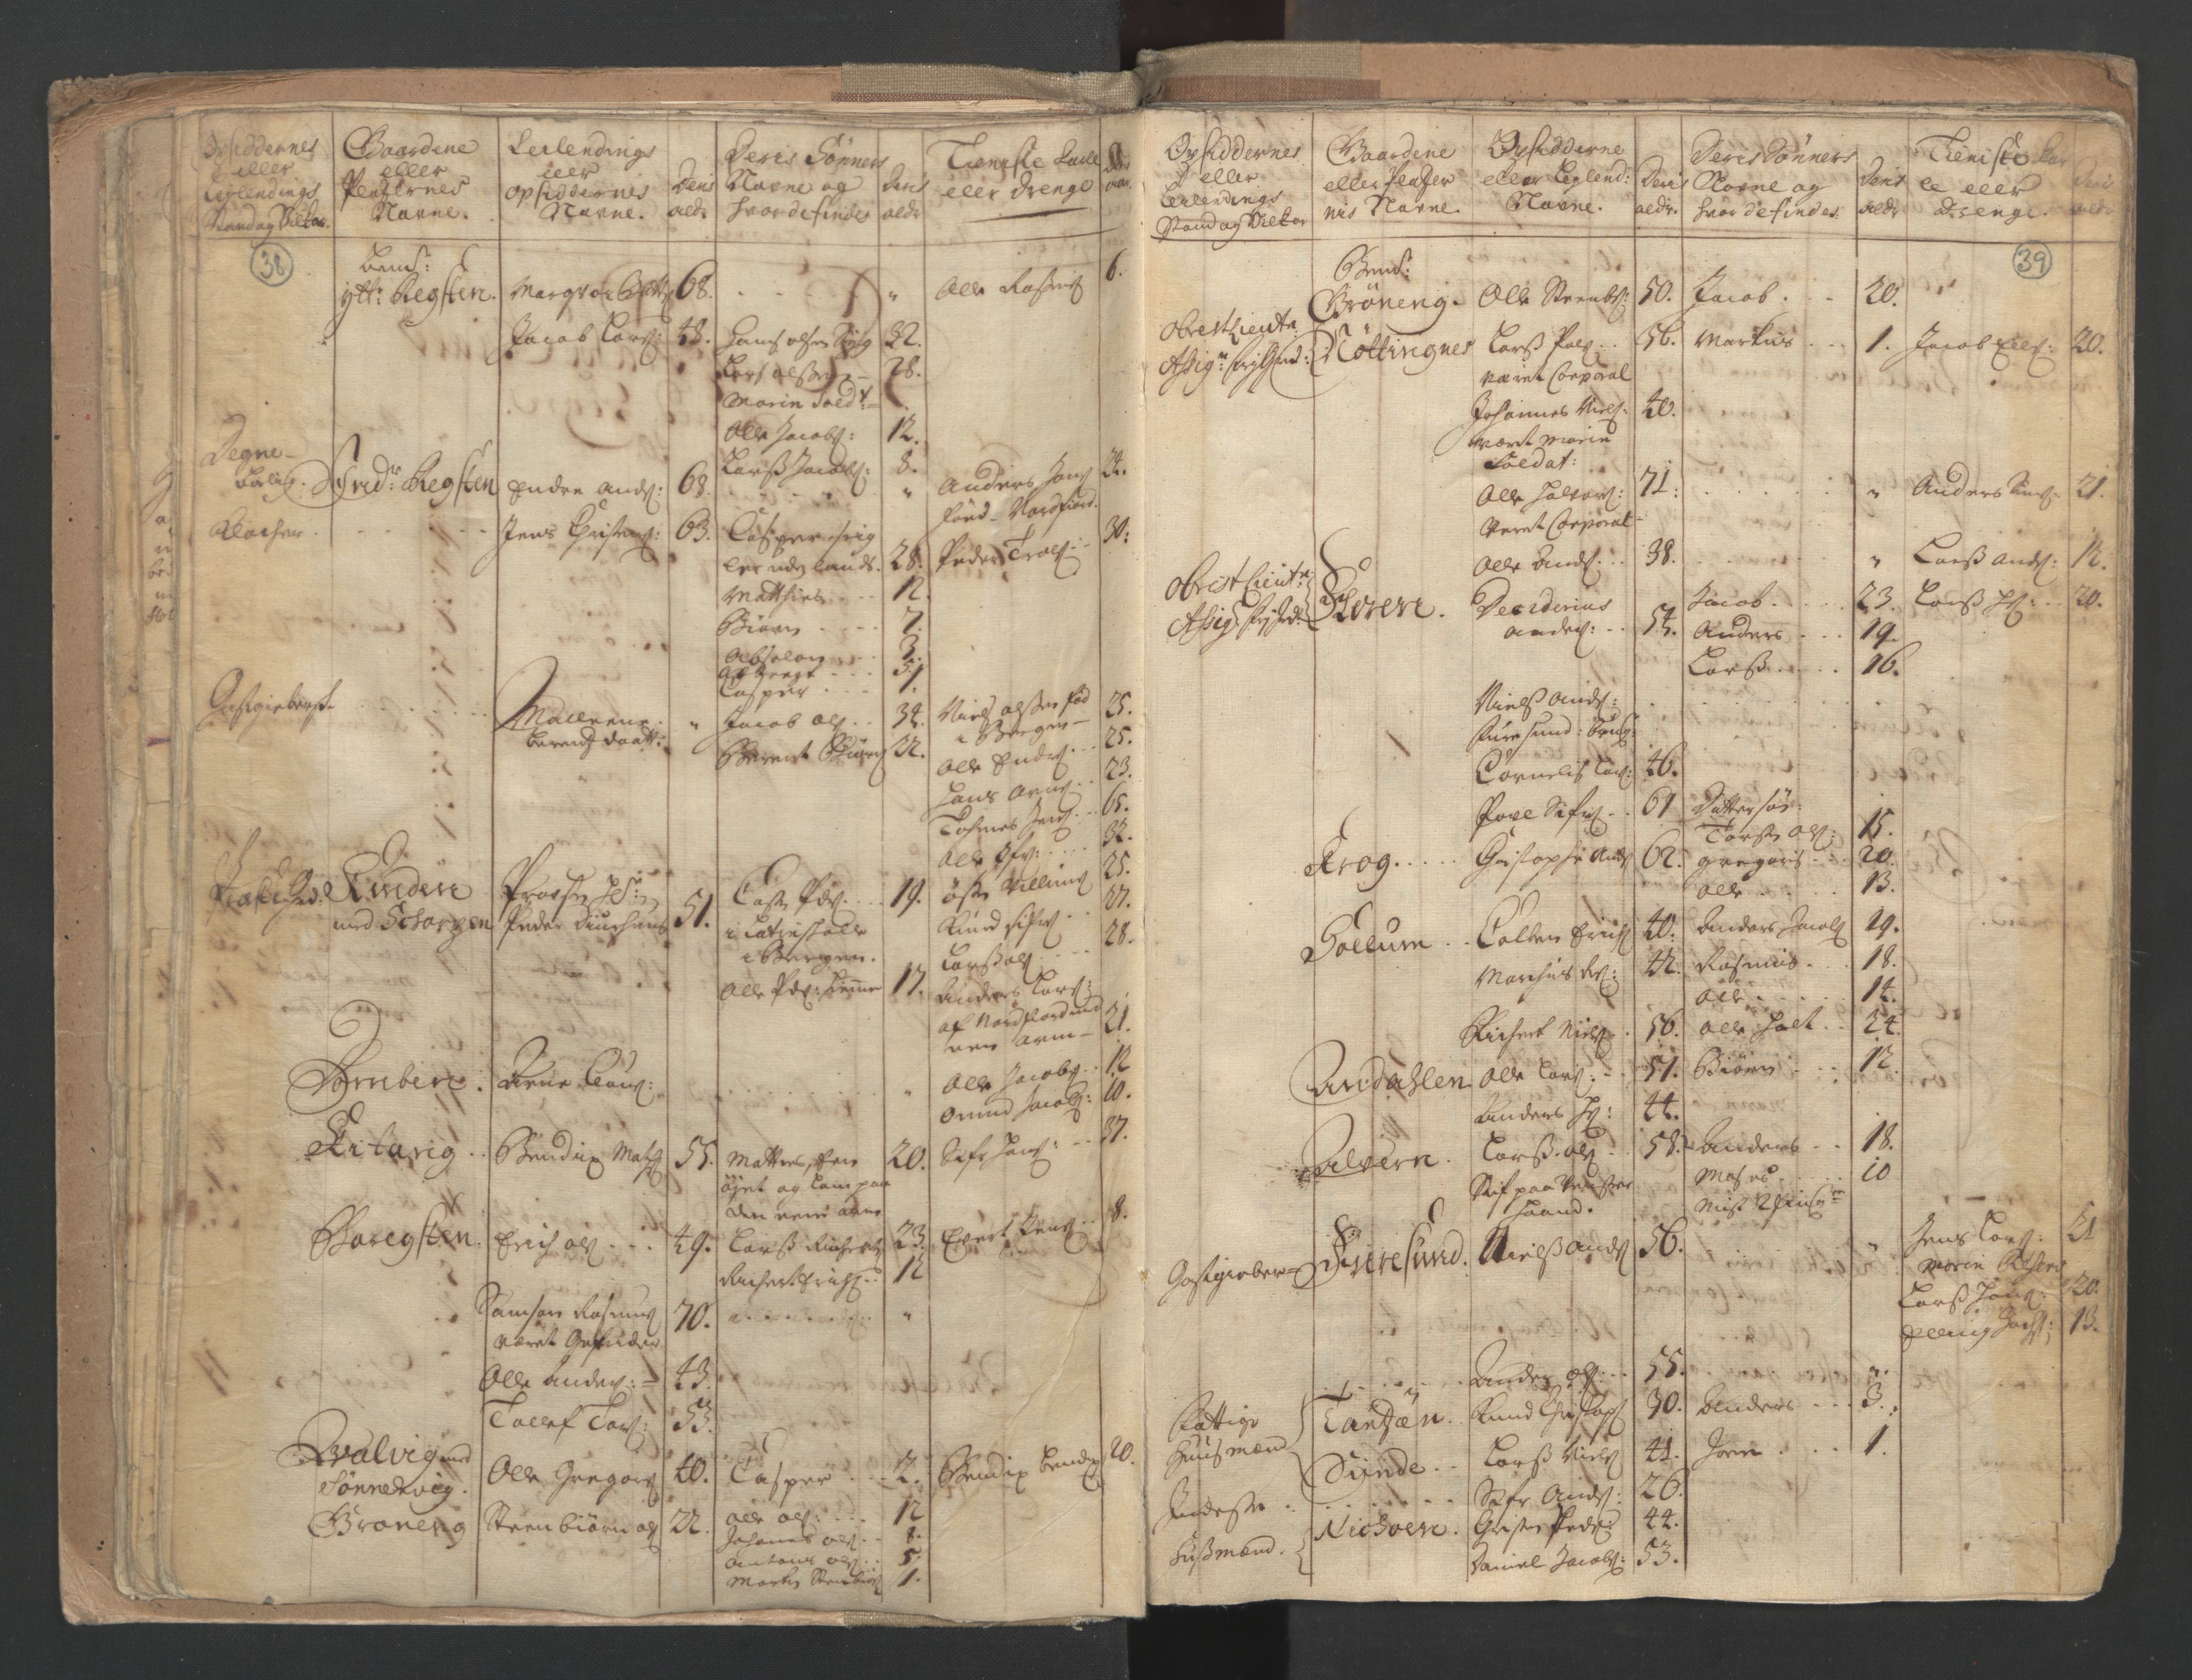 RA, Census (manntall) 1701, no. 9: Sunnfjord fogderi, Nordfjord fogderi and Svanø birk, 1701, p. 38-39